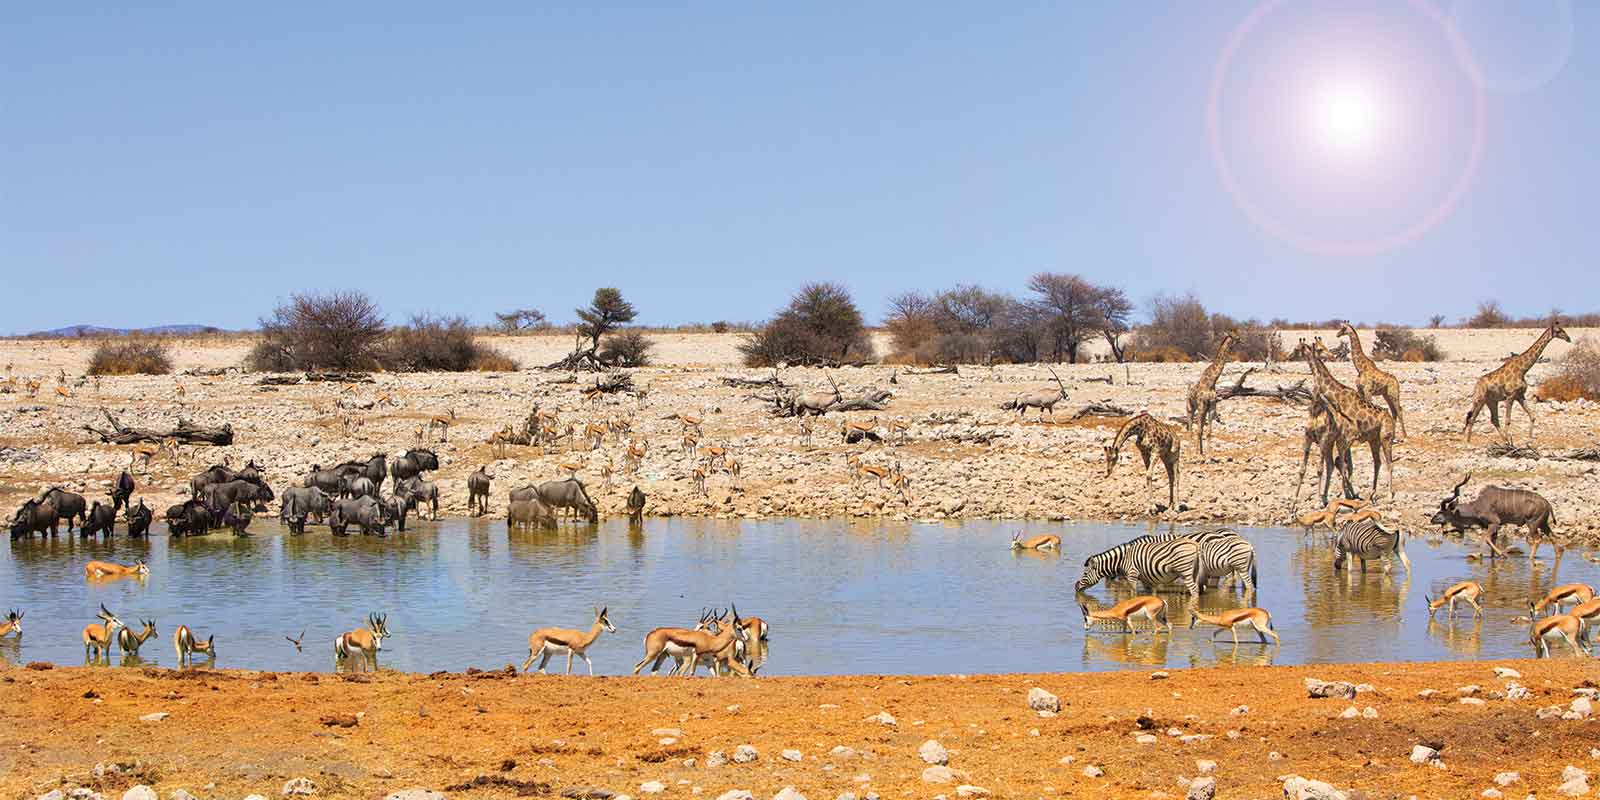 Wildlife gathered around Ongava waterhole, Etosha National Park, Namibia